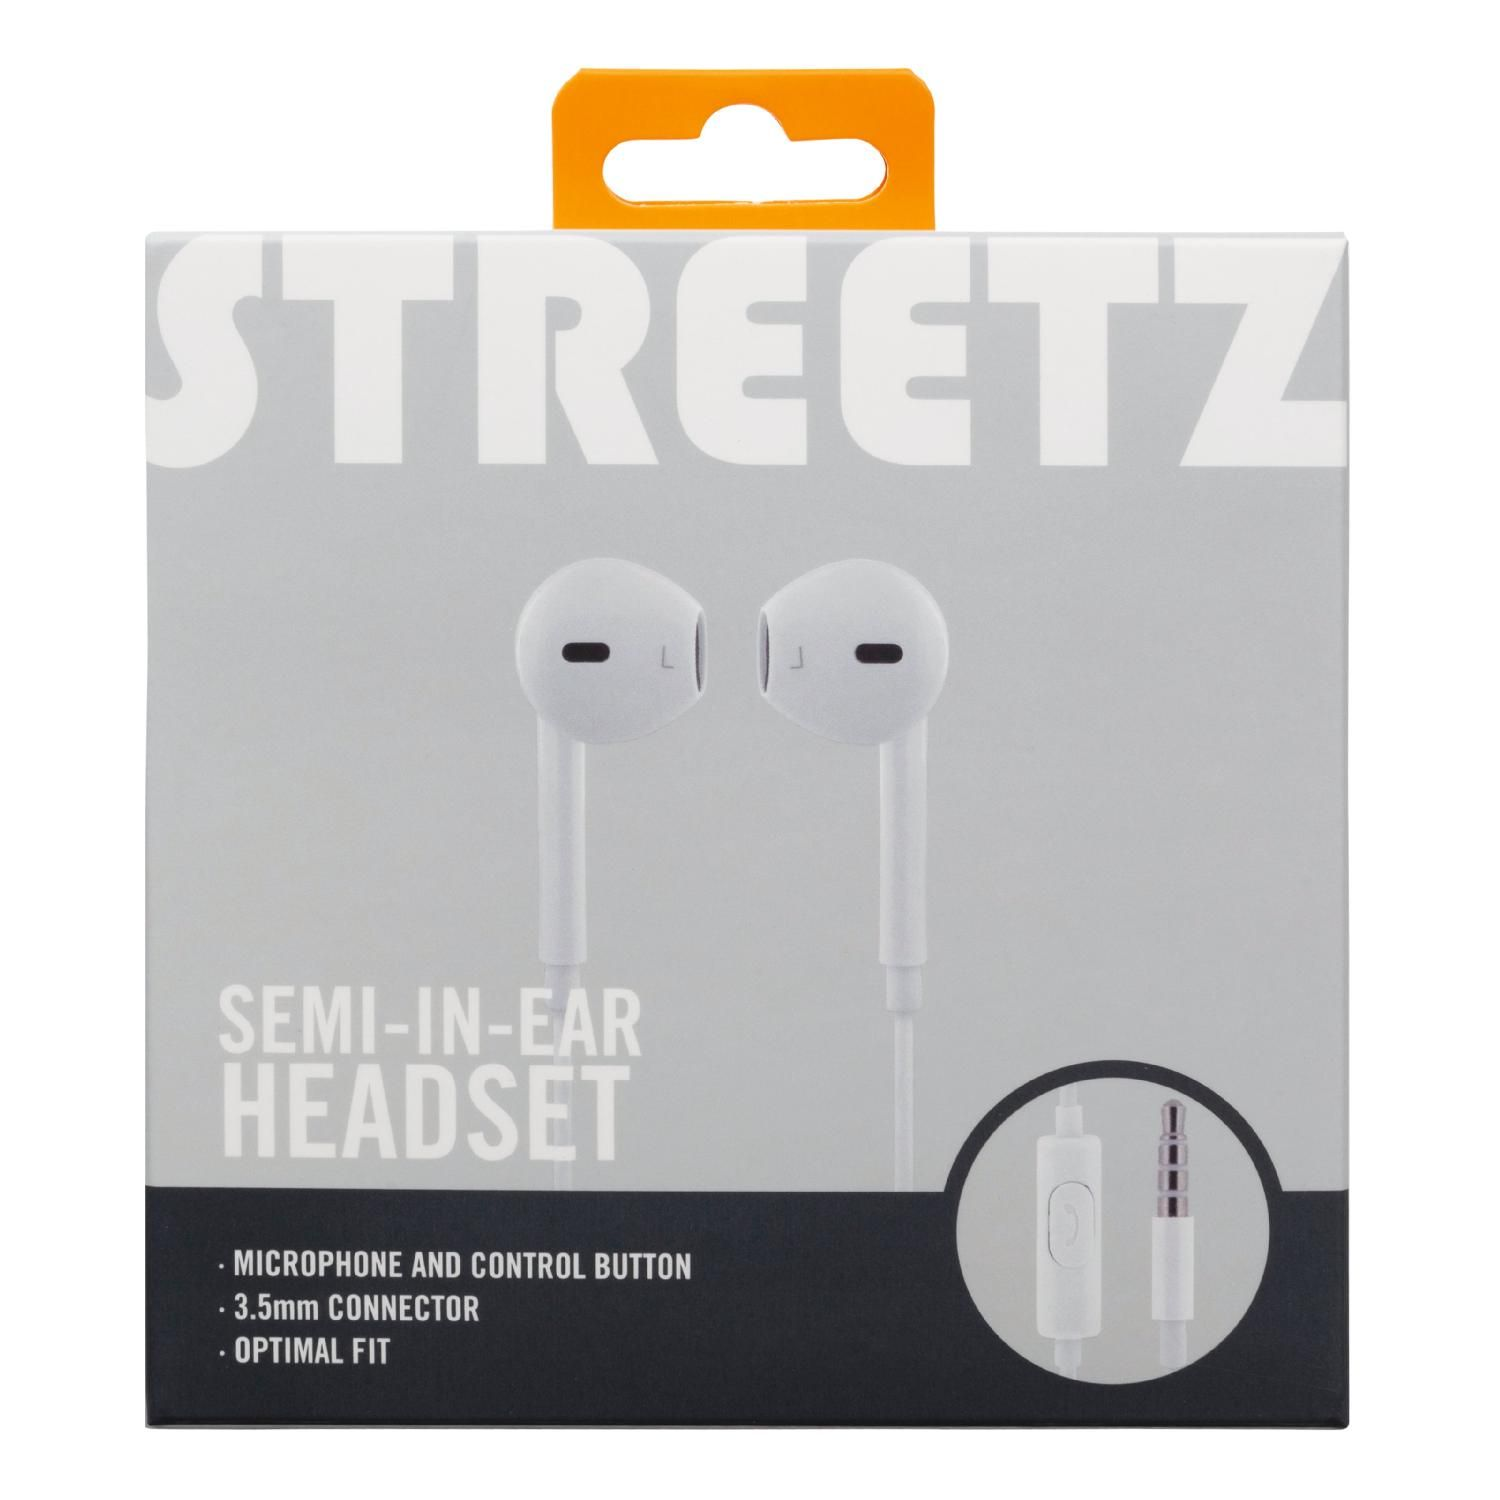 weiß In-ear STREETZ Headset/Kopfhörer, In-Ear-Kopfhörer Semi-In-Ear